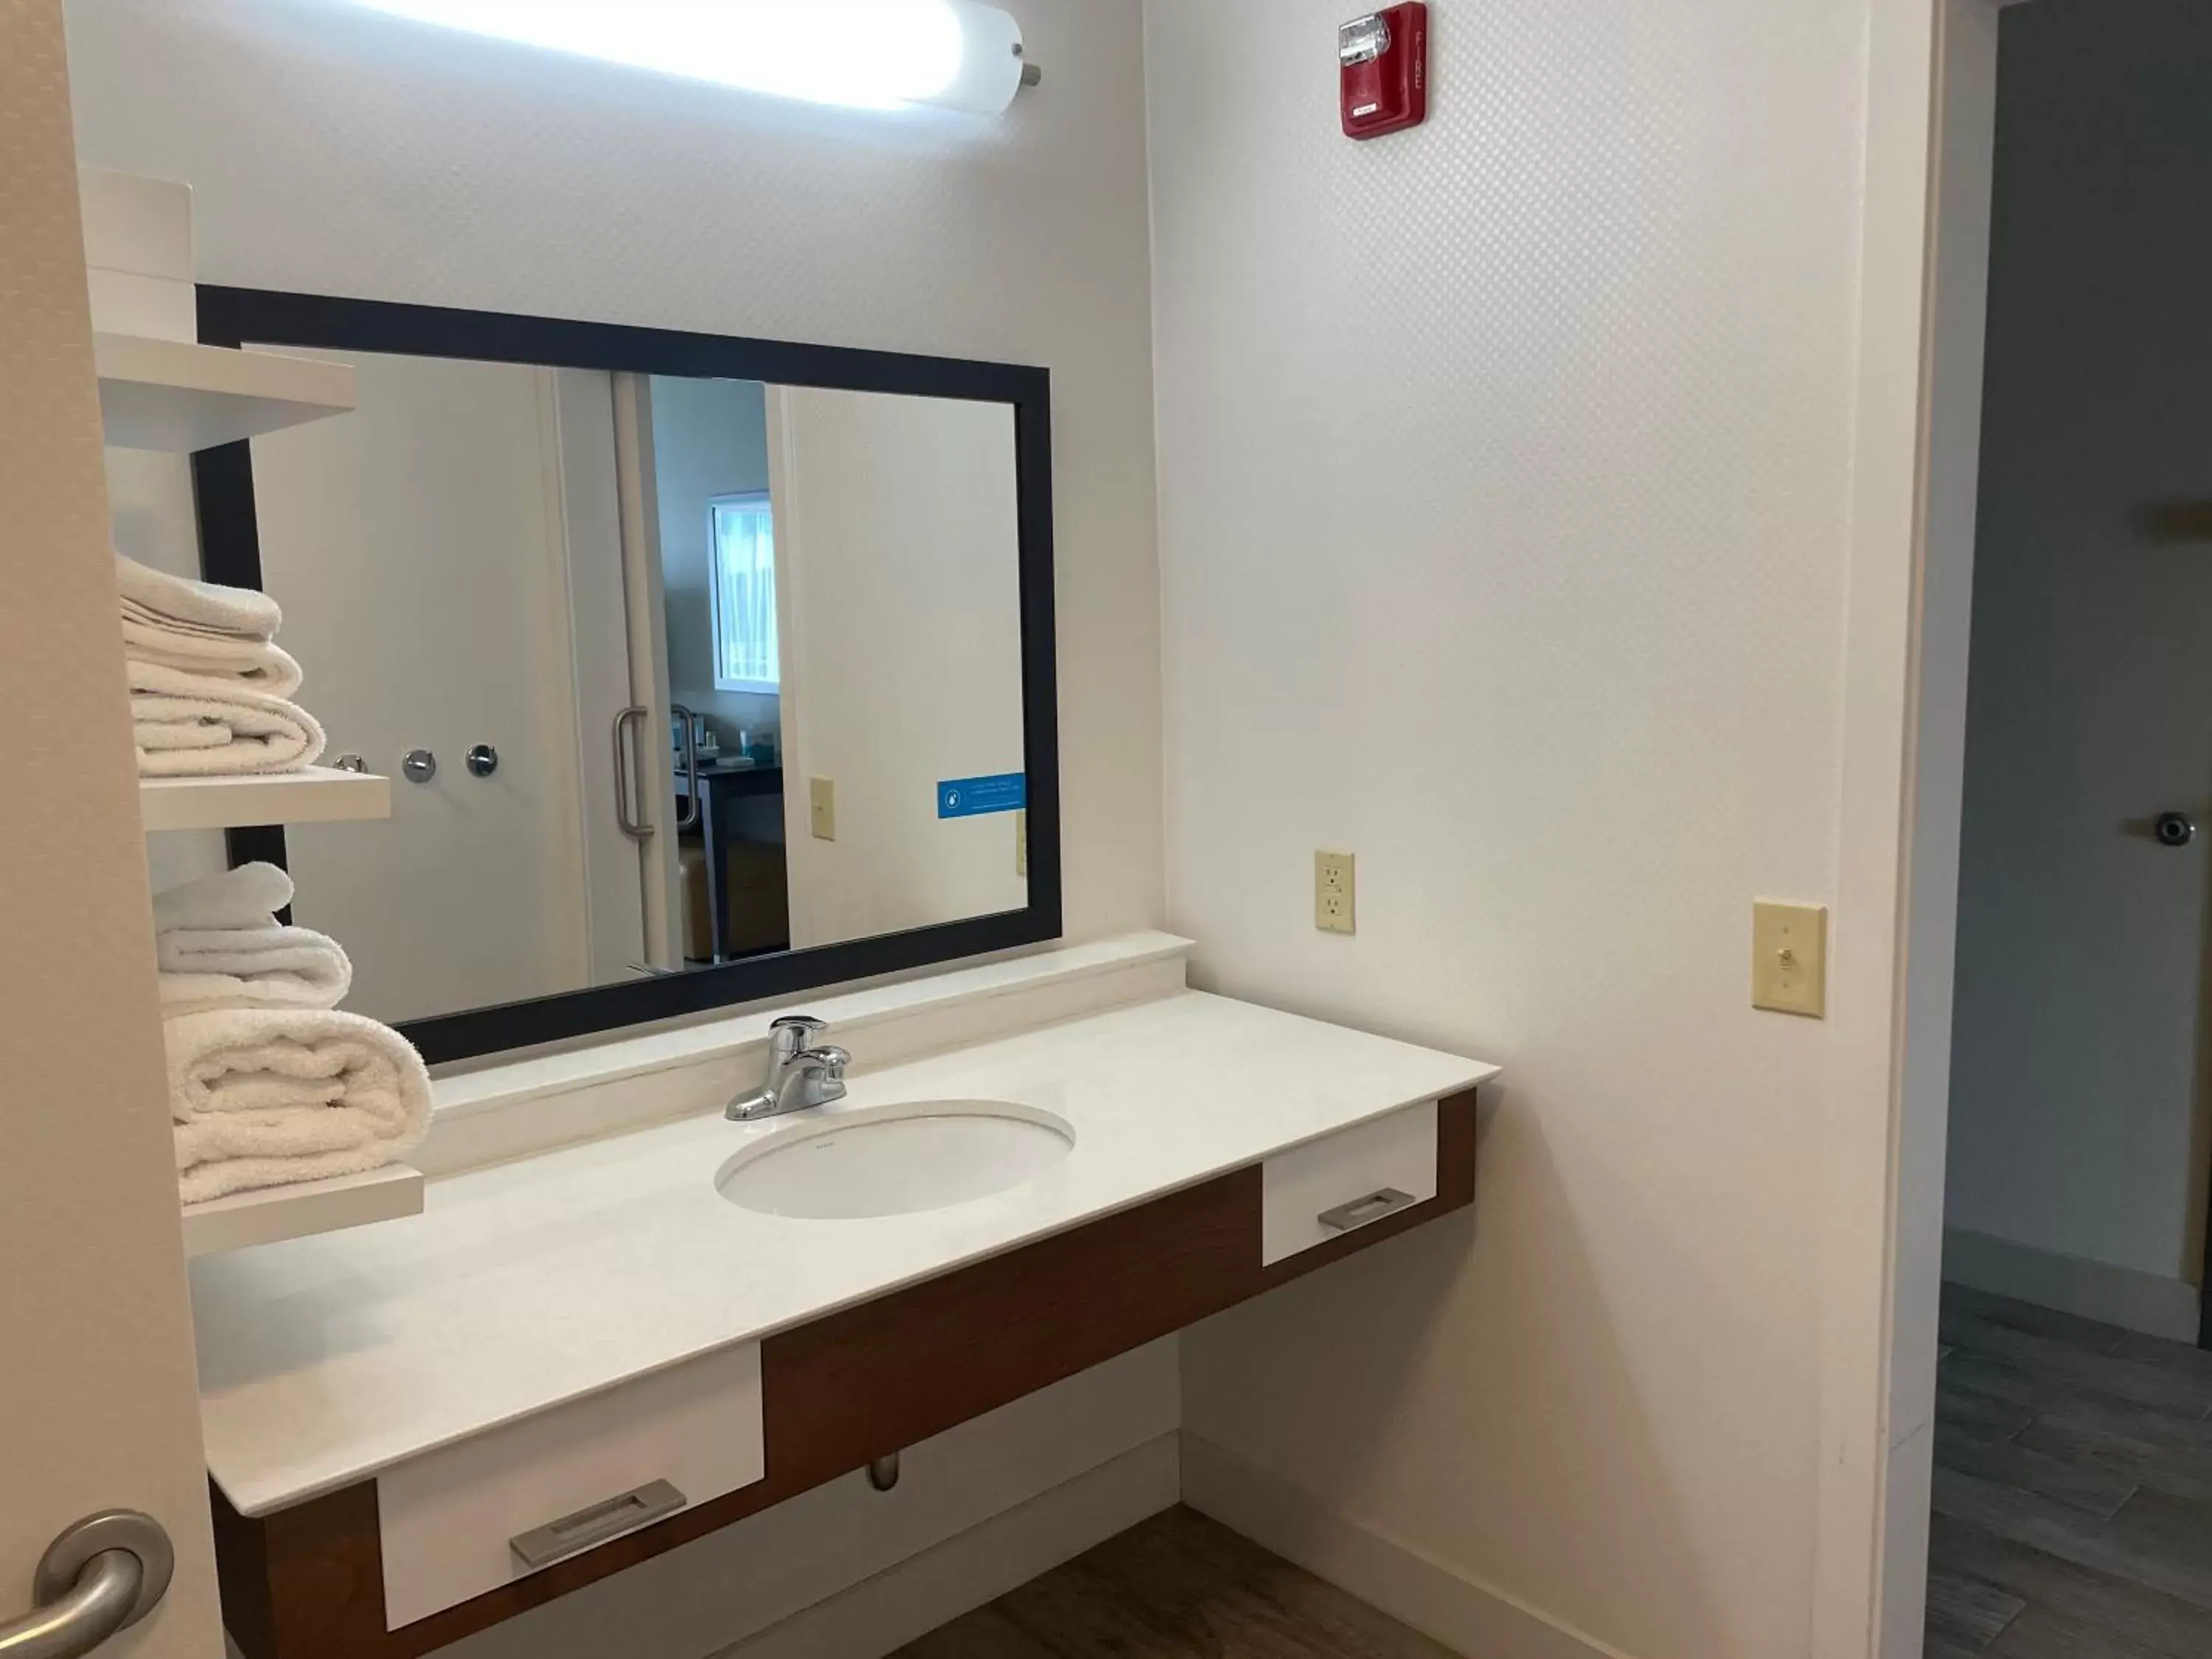 Bathroom in Pratt Inn and Suites